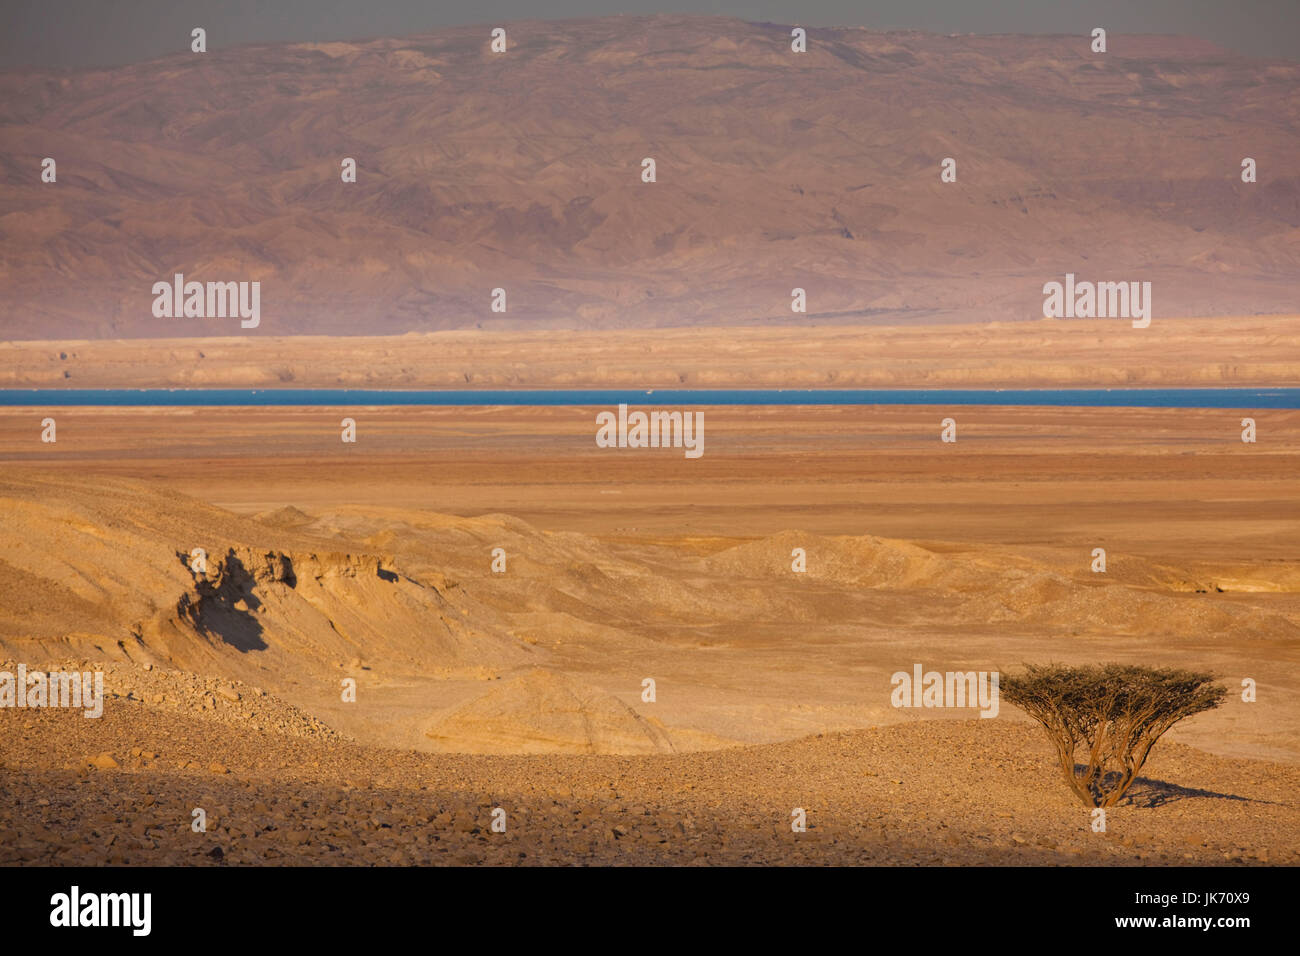 Israel, Dead Sea, Ein Bokek, desert landscape with Dead Sea Stock Photo